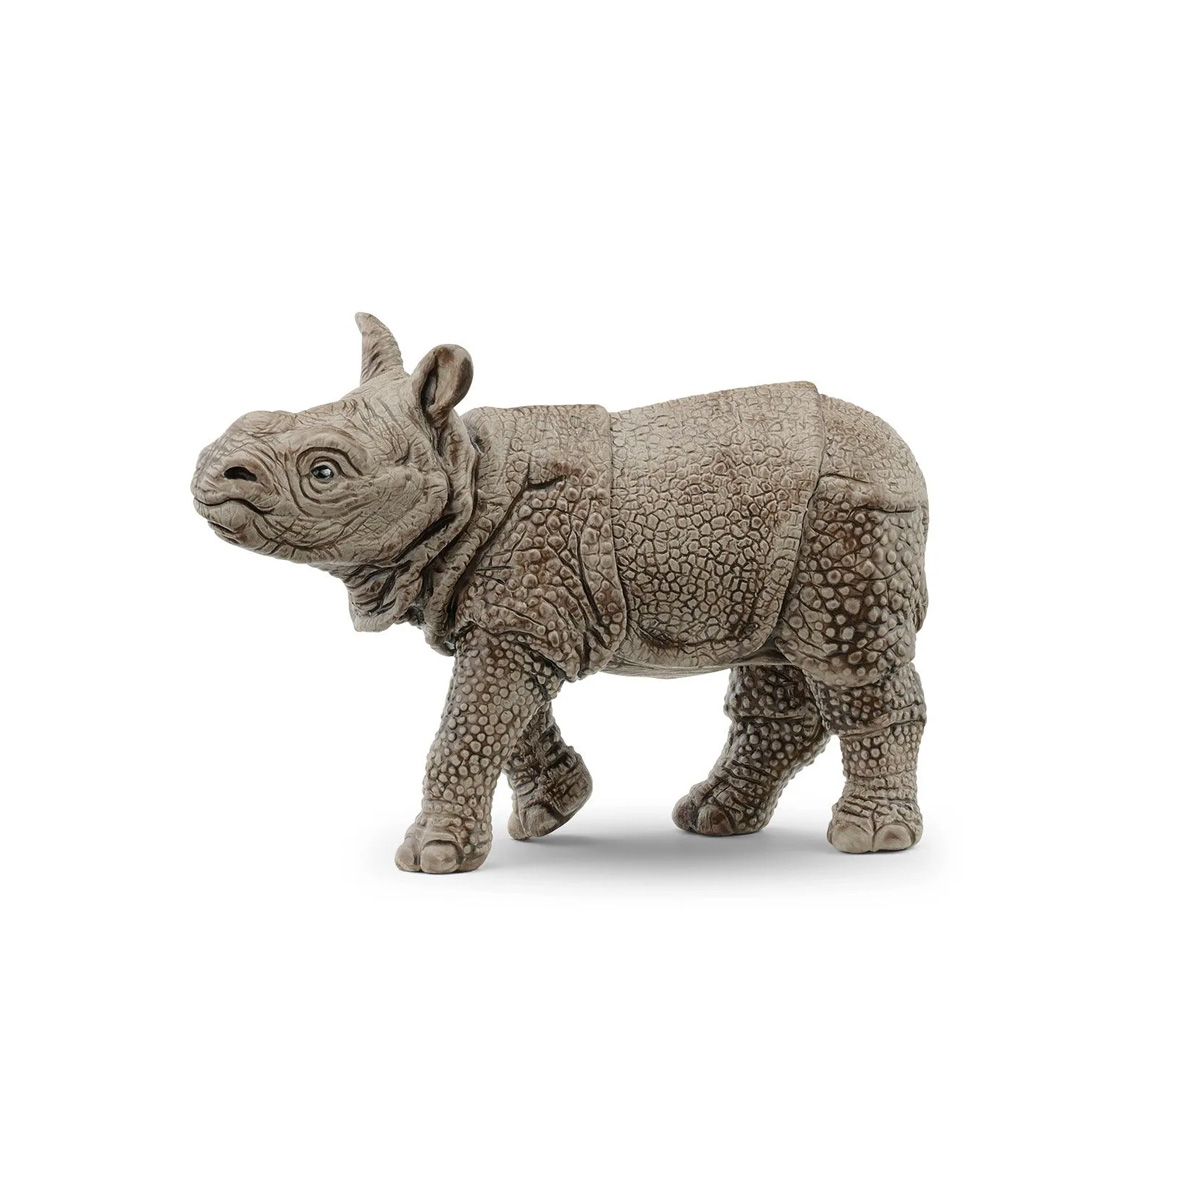 Cría de rinoceronte indio